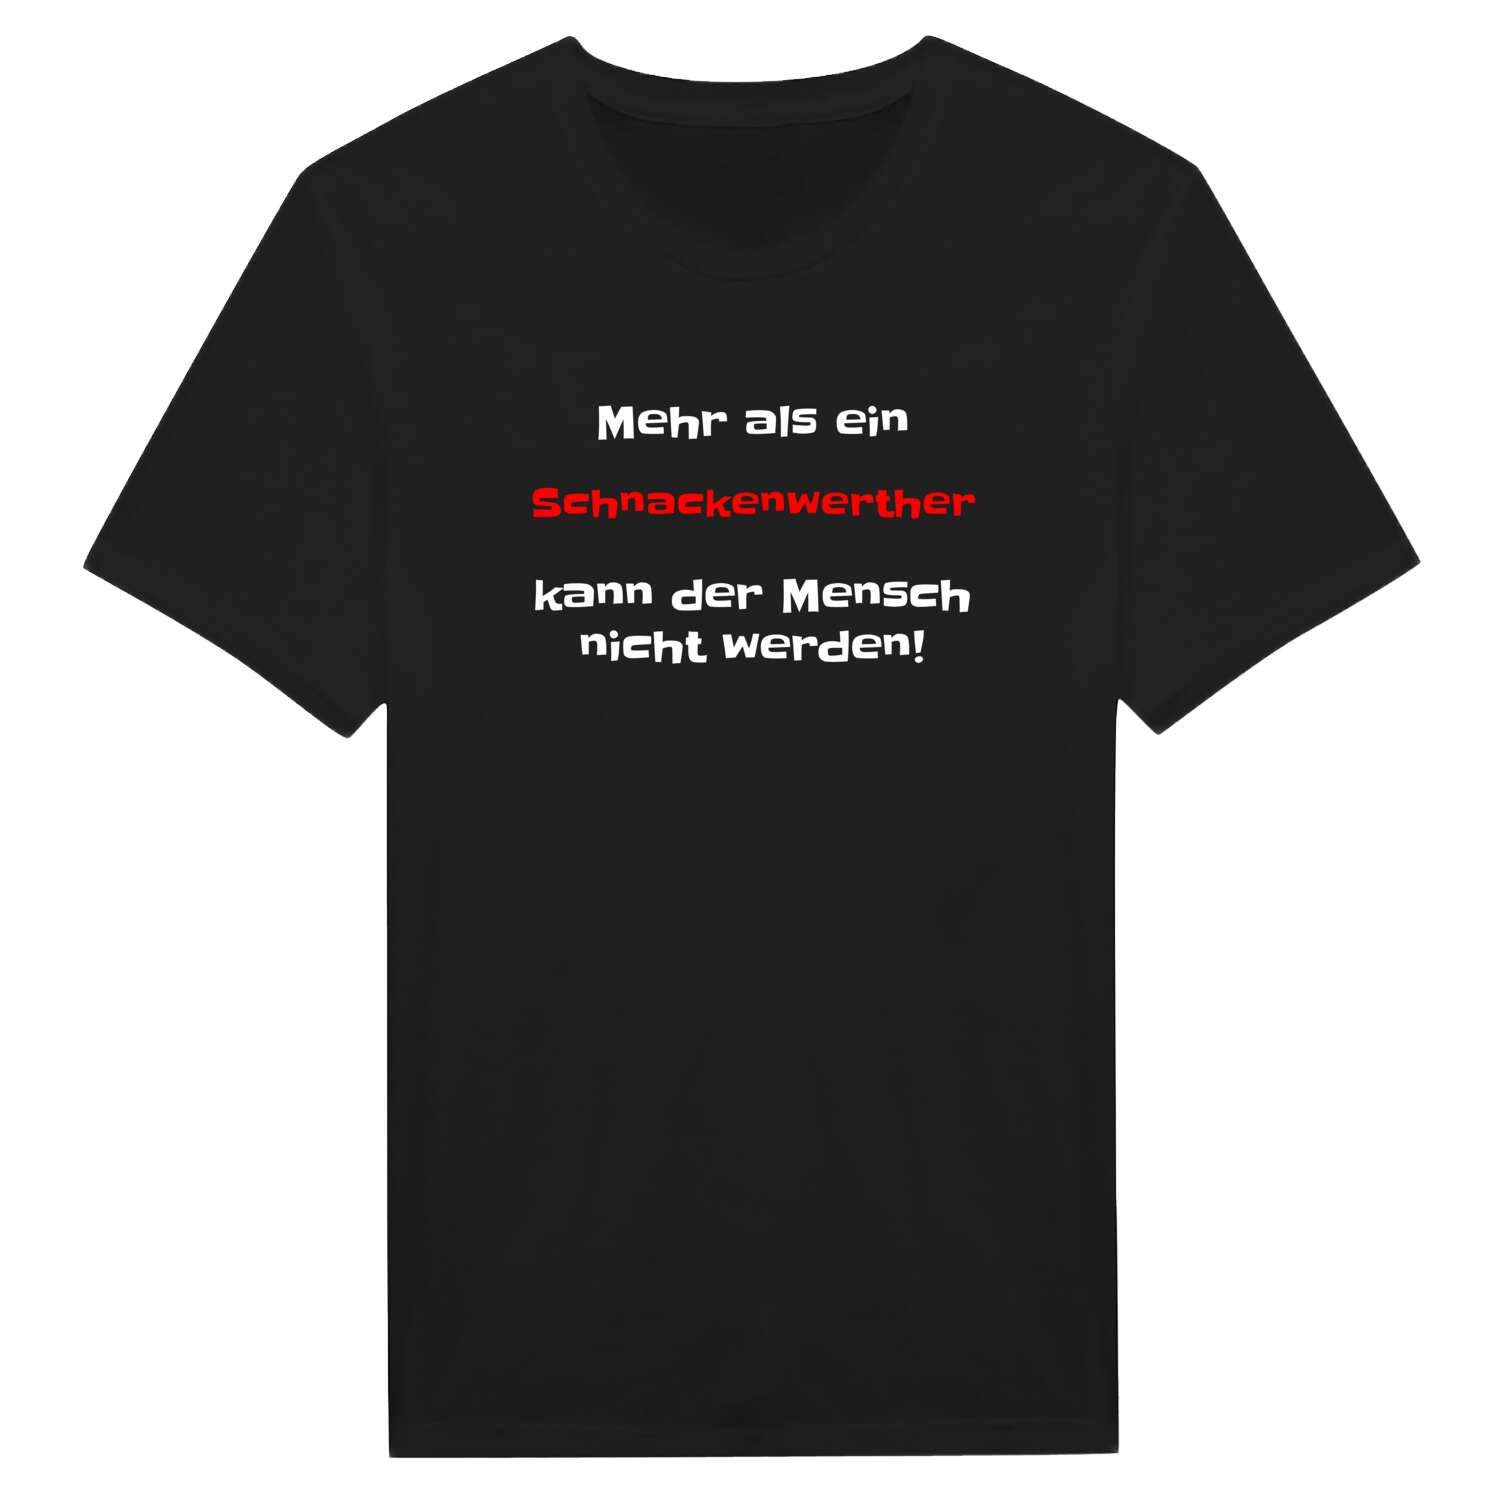 Schnackenwerth T-Shirt »Mehr als ein«